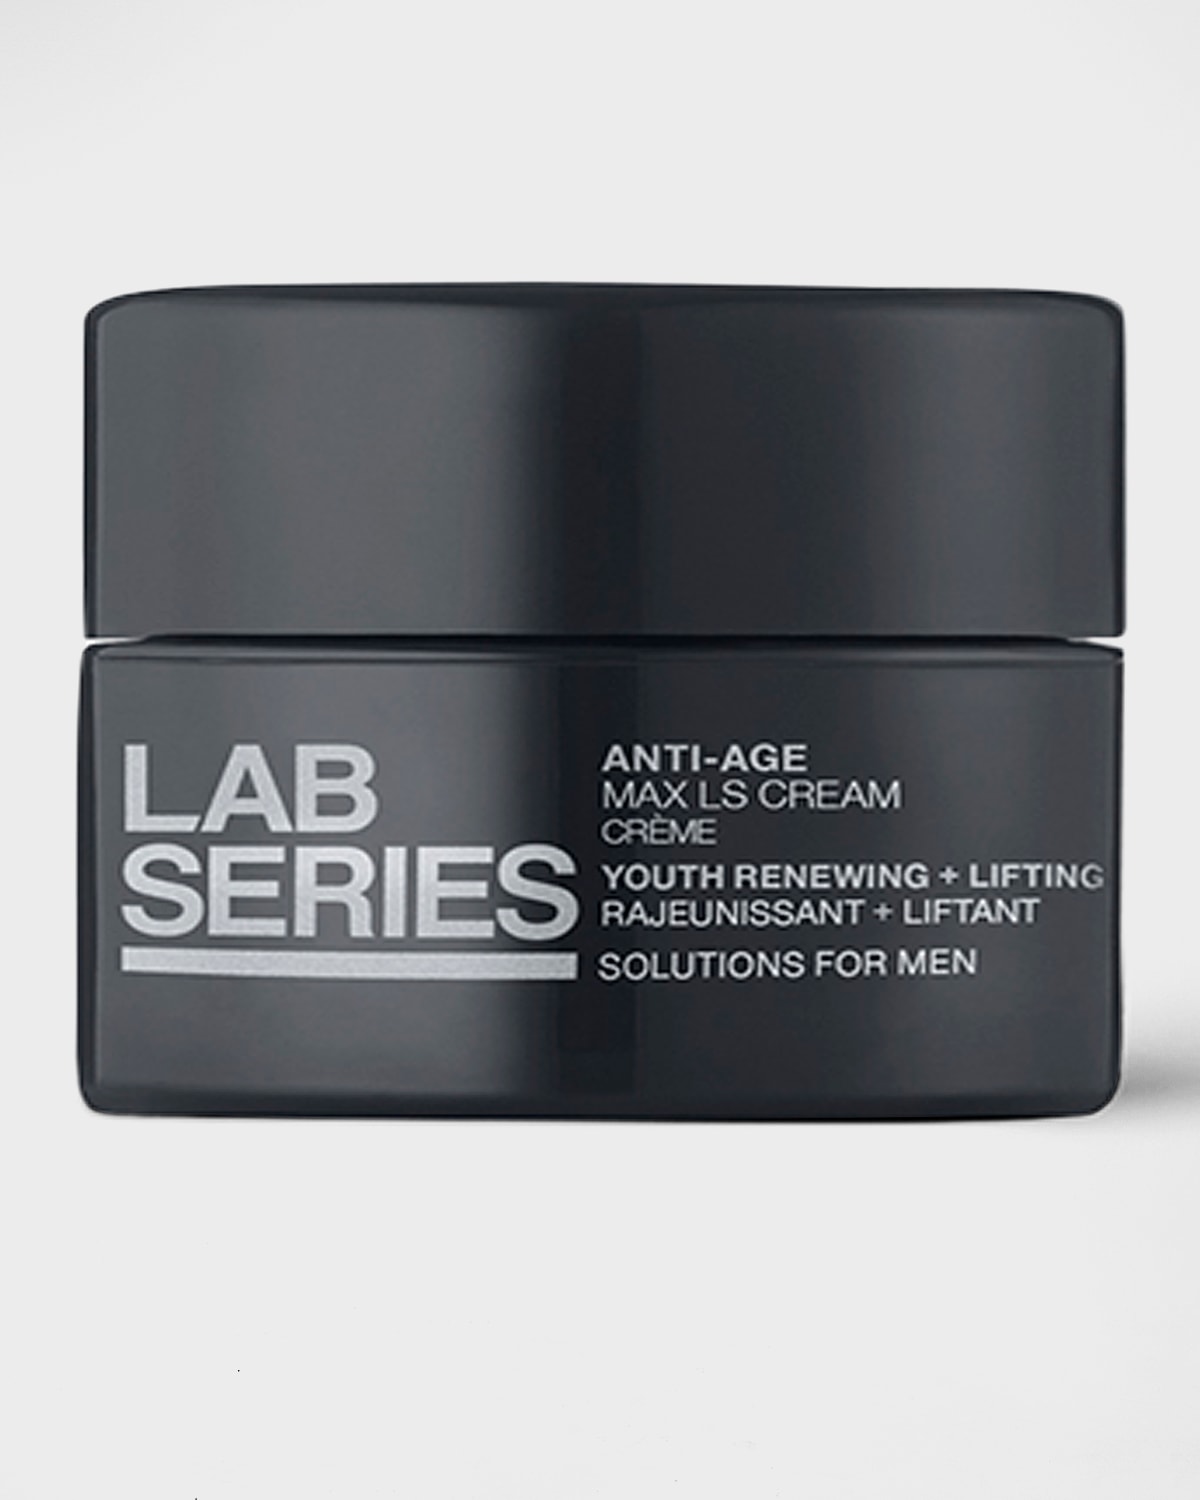 Lab Series for Men 1.5 oz. Anti-Age Max LS Cream